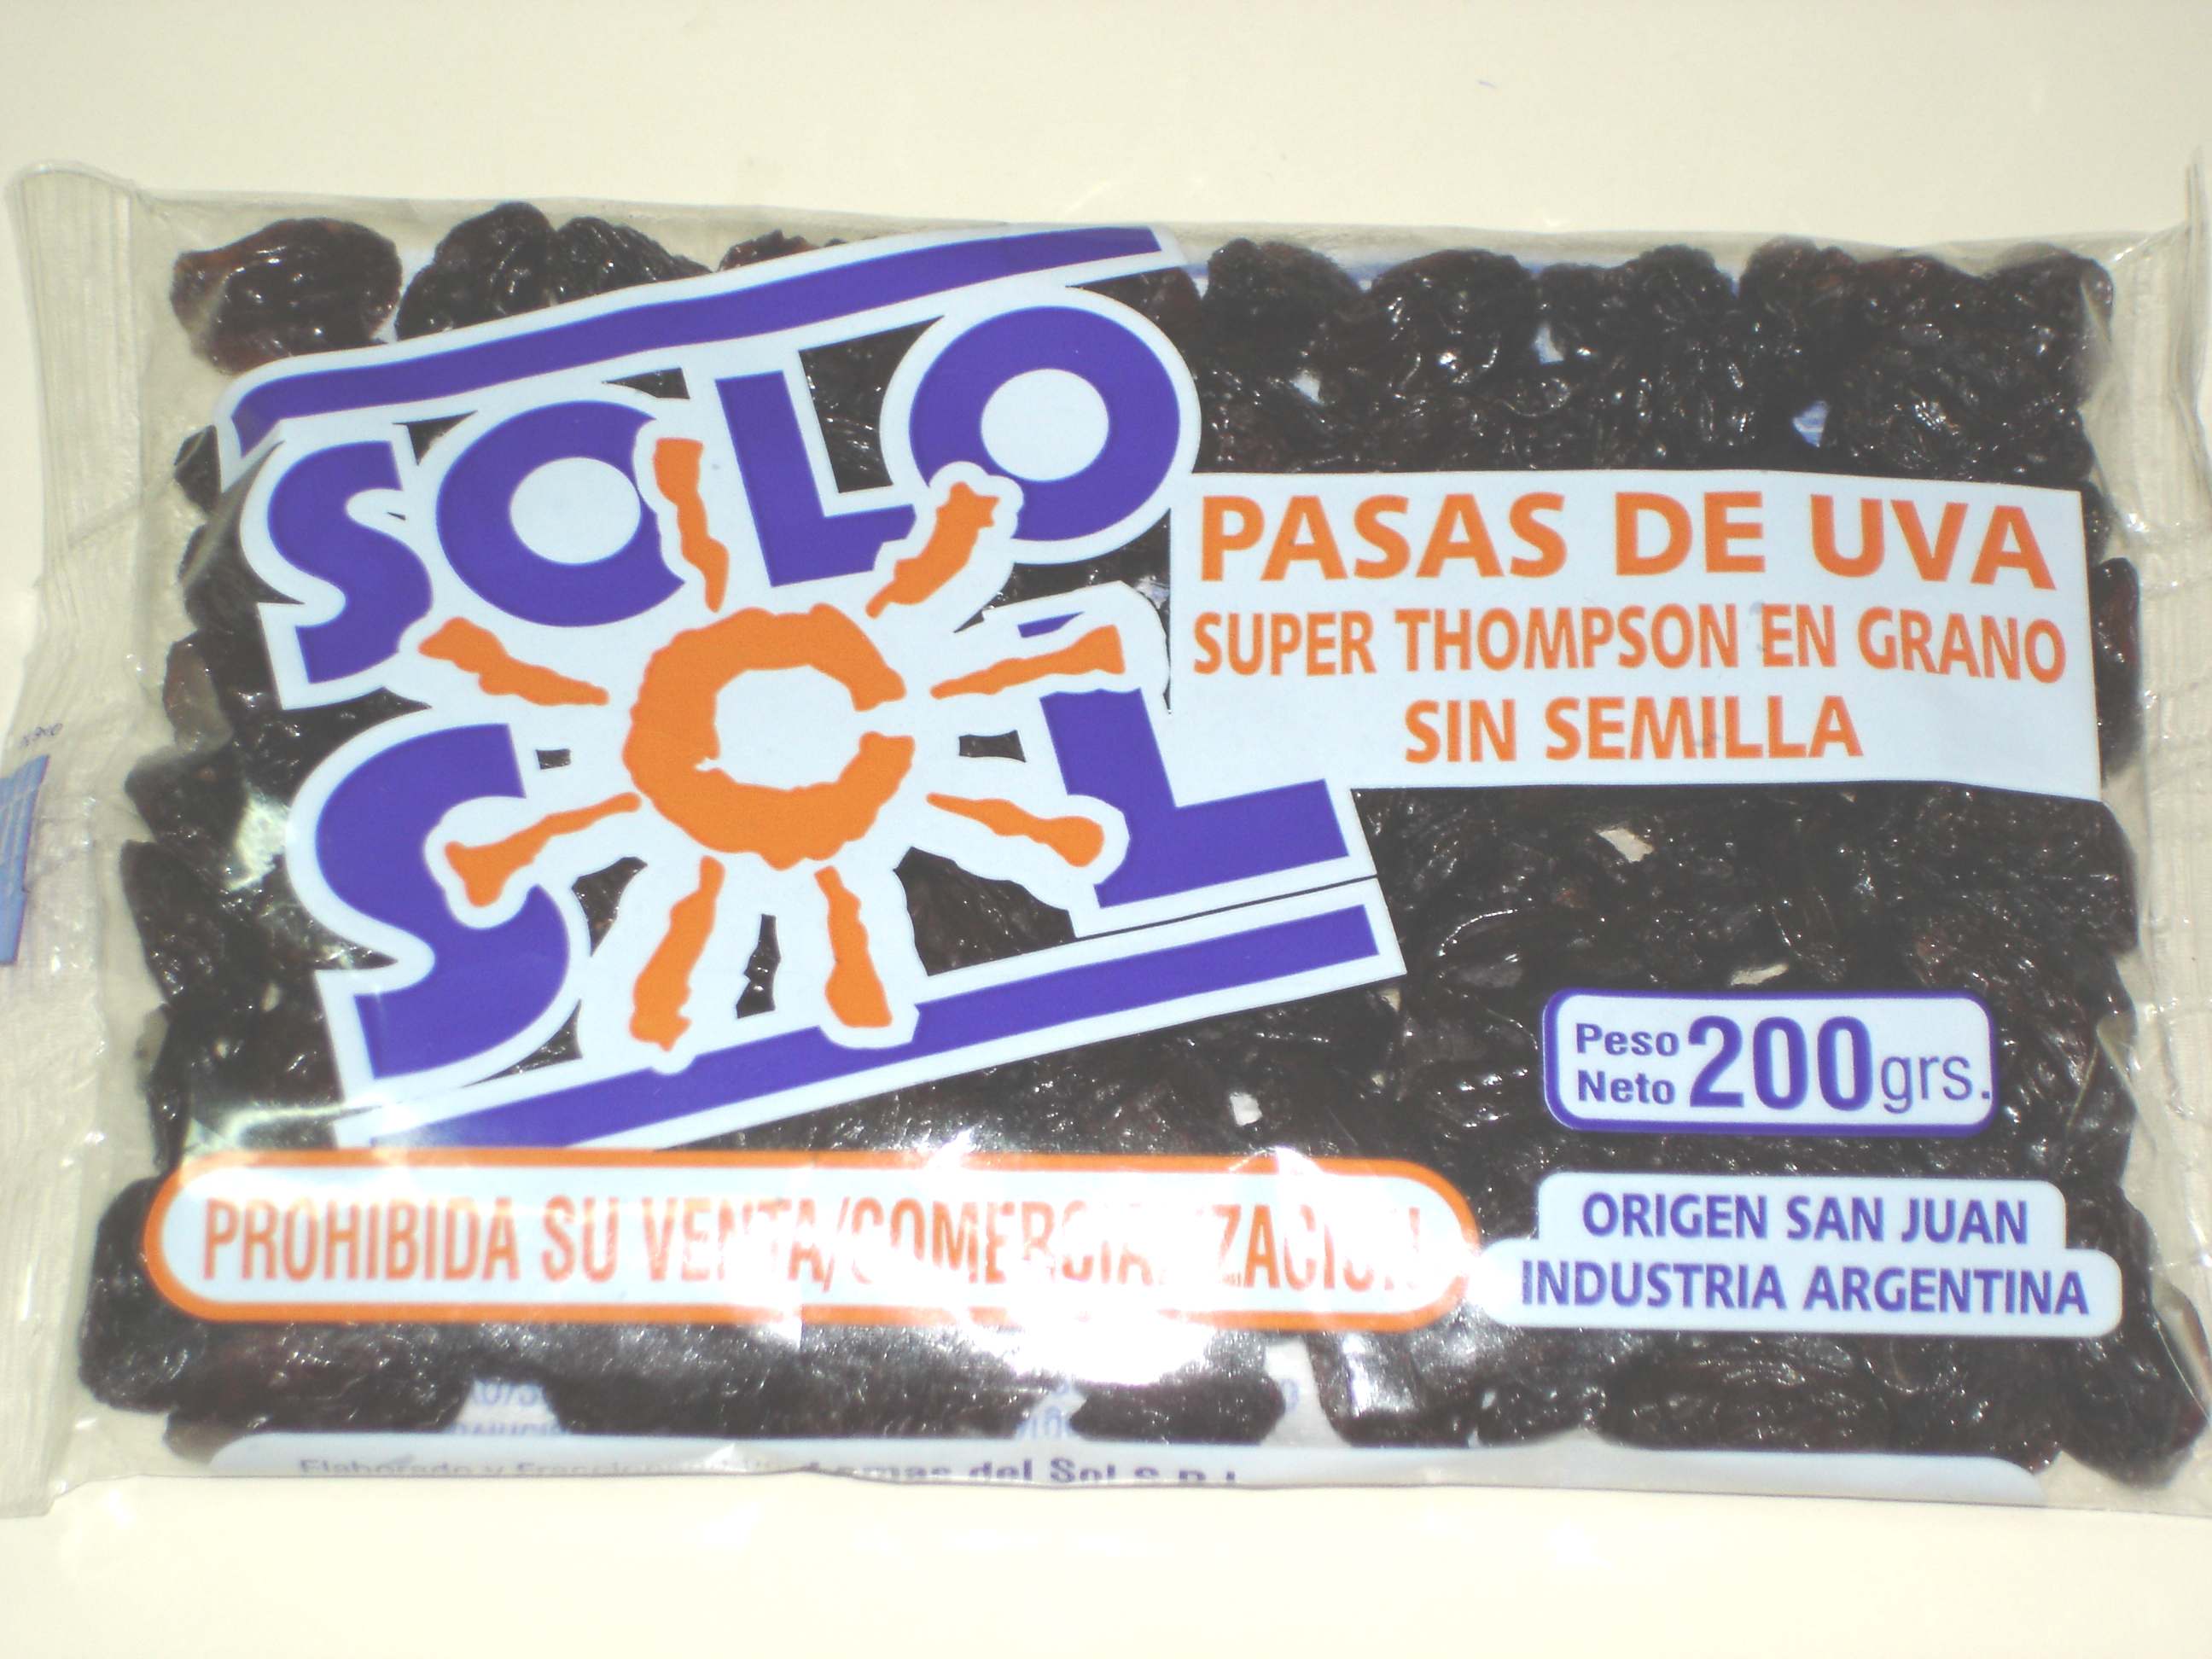 Super thompson Seedless Raisins - Dried fruits